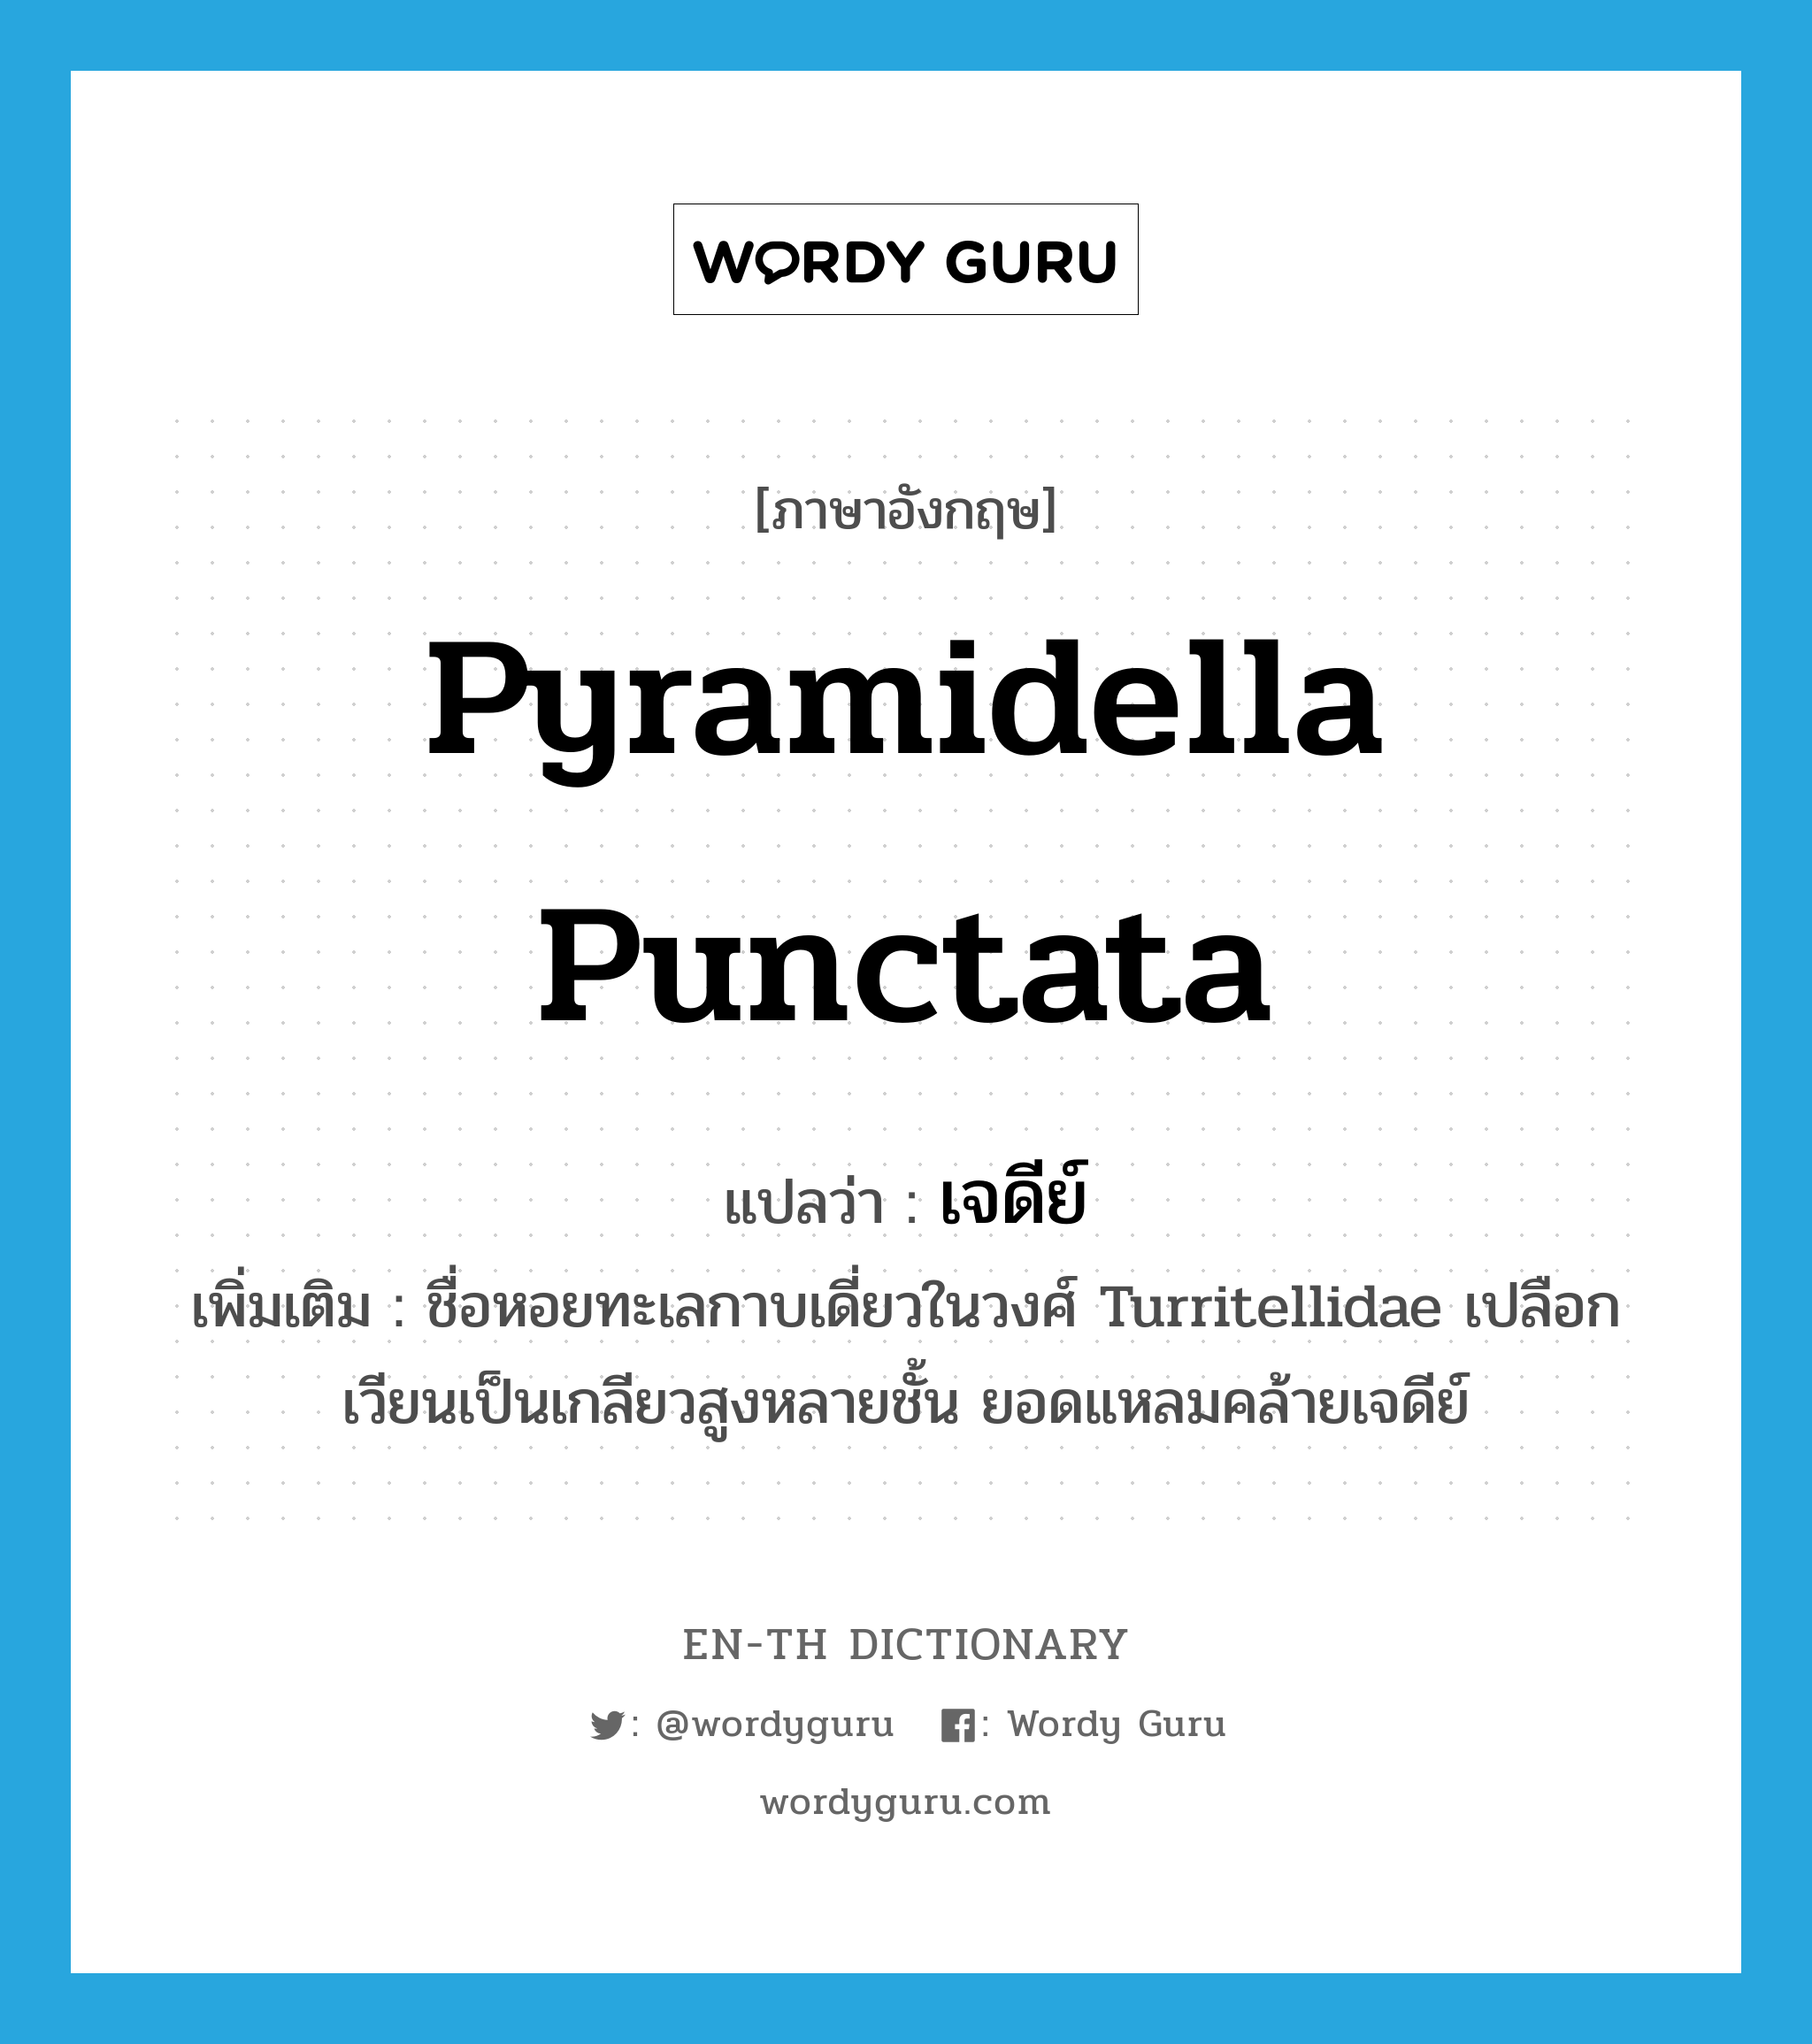 เจดีย์ ภาษาอังกฤษ?, คำศัพท์ภาษาอังกฤษ เจดีย์ แปลว่า Pyramidella punctata ประเภท N เพิ่มเติม ชื่อหอยทะเลกาบเดี่ยวในวงศ์ Turritellidae เปลือกเวียนเป็นเกลียวสูงหลายชั้น ยอดแหลมคล้ายเจดีย์ หมวด N